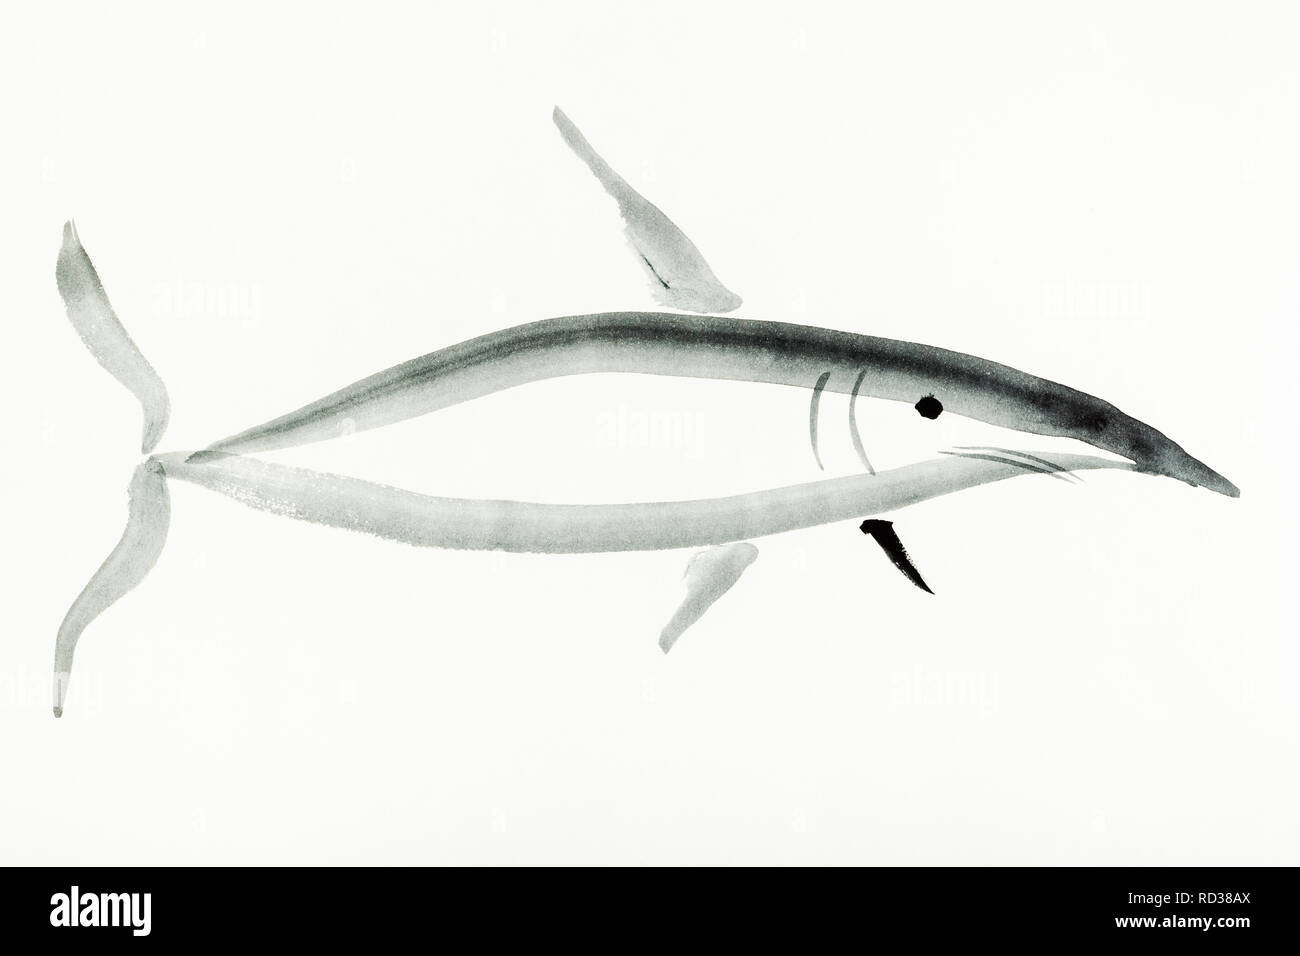 La formation en dessin sumi-e (suibokuga) with style - shark est dessiné à la main sur papier crème Banque D'Images